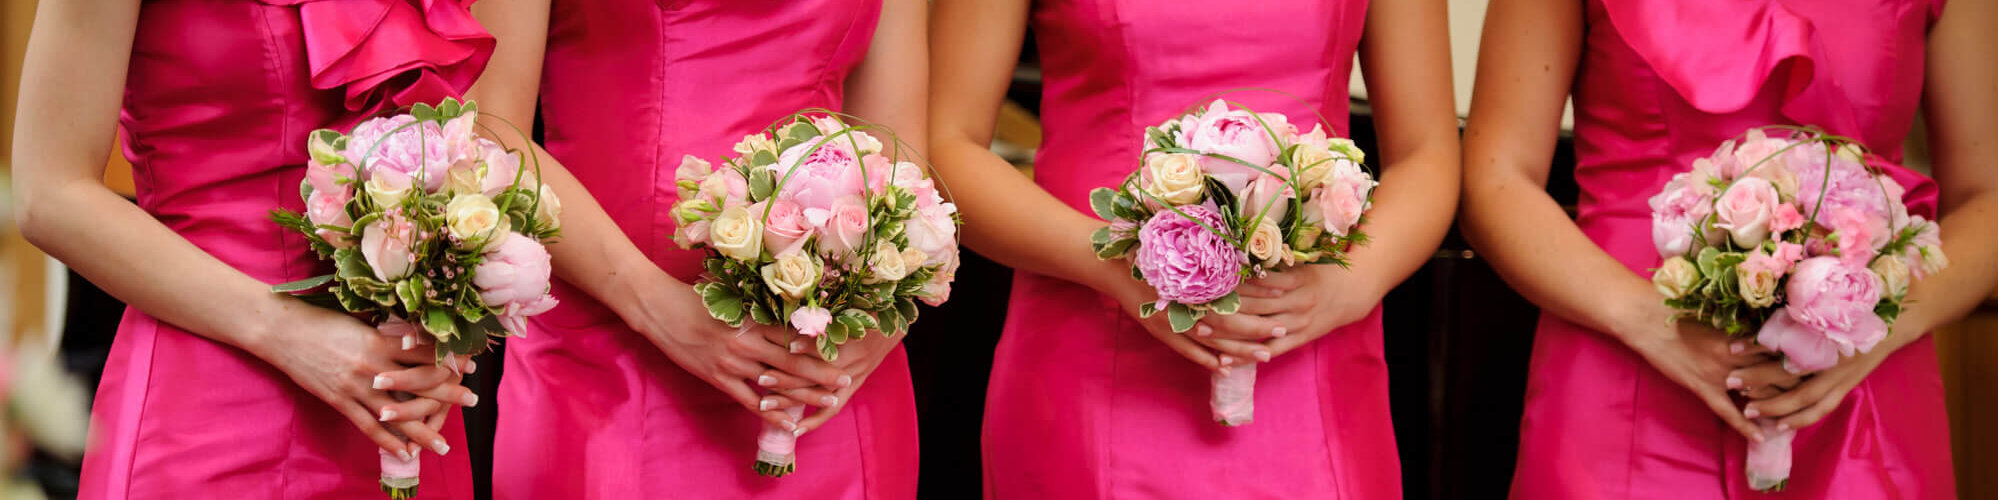 Brautjungfern in pinken Kleidern mit Blumenstrauß